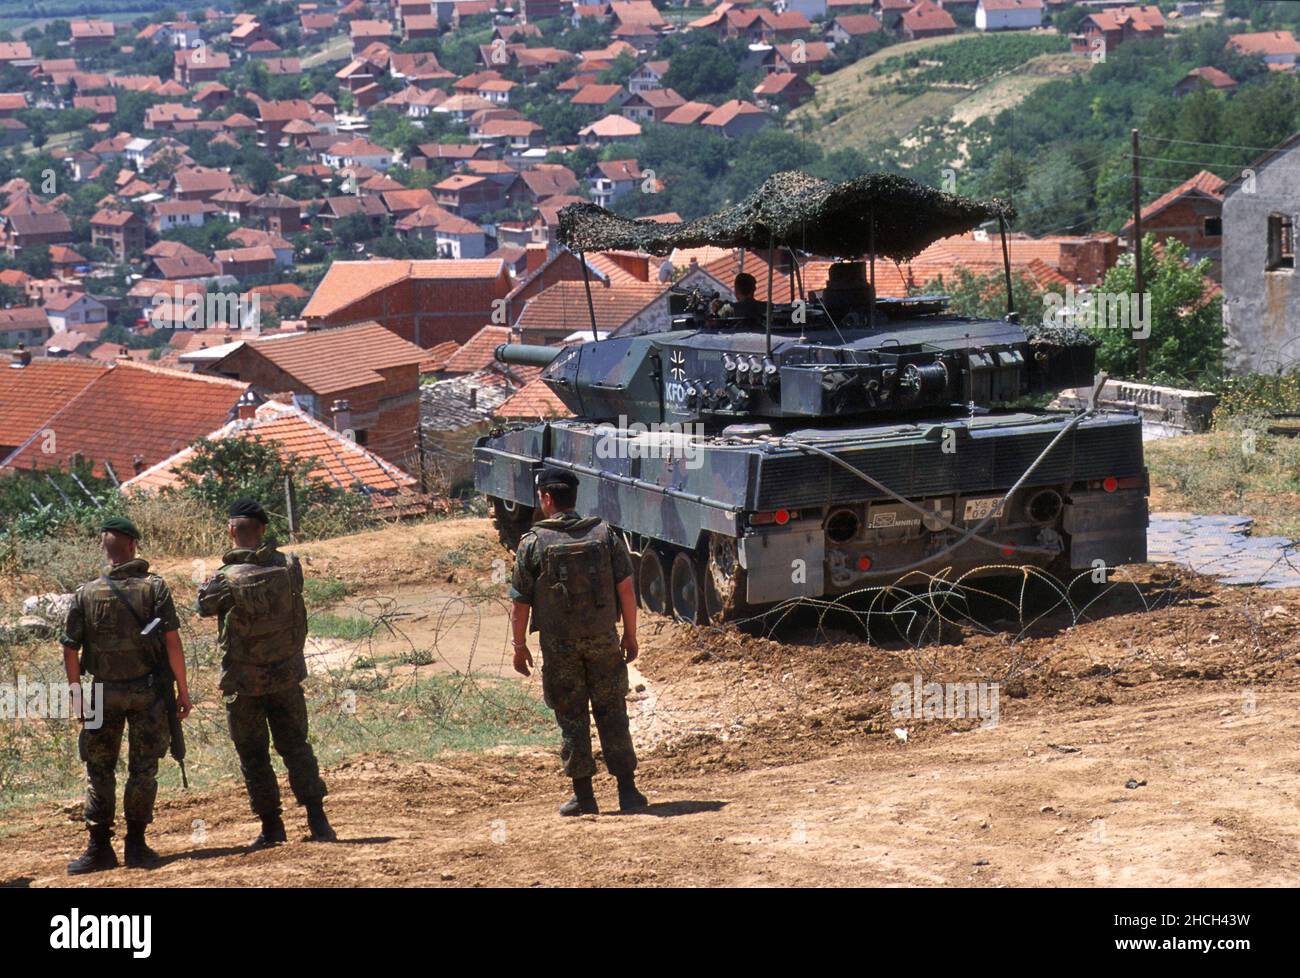 - NATO intervention in Kosovo, checkpoint of the German army with a Leopard 2 tank near the town of Orahovac (July 2000)   - Intervento NATO in Kossovo, checkpoint dell'esercito tedesco con un carro armato Leopard 2 presso la città di Orahovac (Luglio 2000) Stock Photo